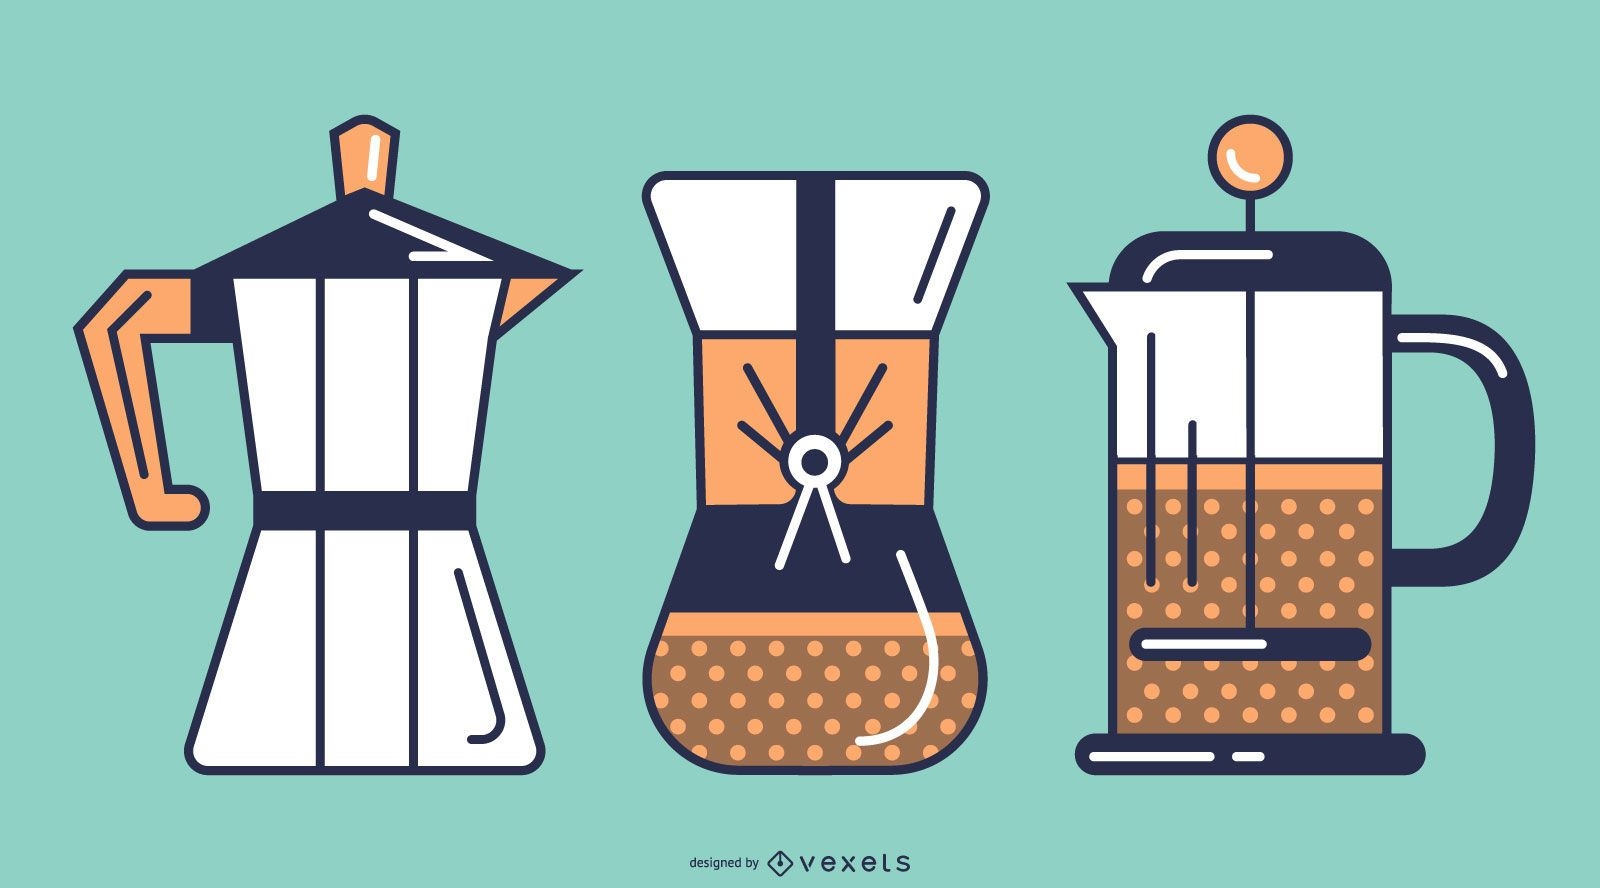 Coffee makers stroke set